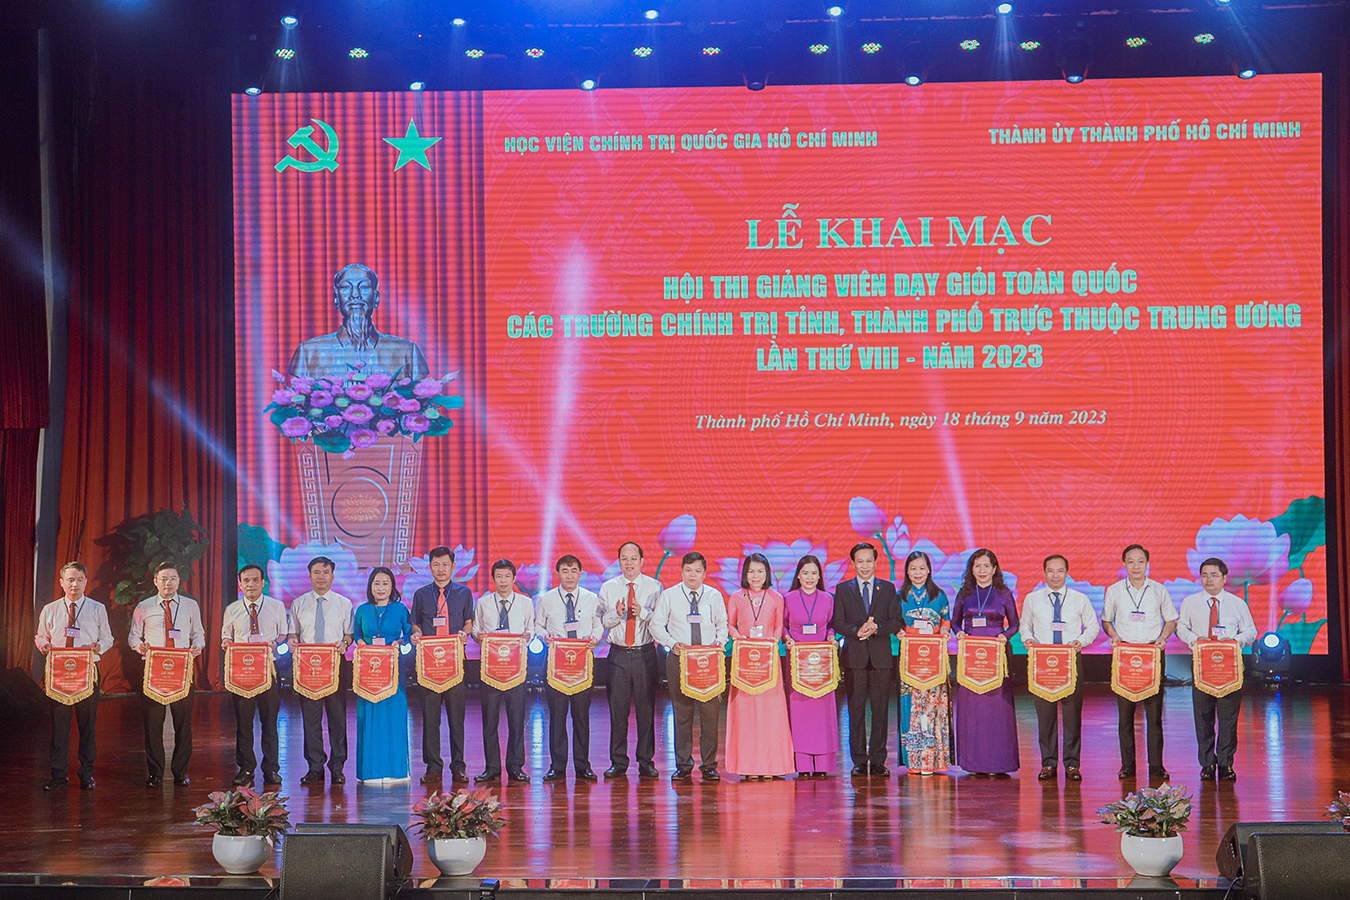 Trường Chính trị Nguyễn Văn Linh tham gia Hội thi giảng viên dạy giỏi toàn quốc các trường Chính trị tỉnh, thành phố trực thuộc Trung ương lần thứ VIII - năm 2023